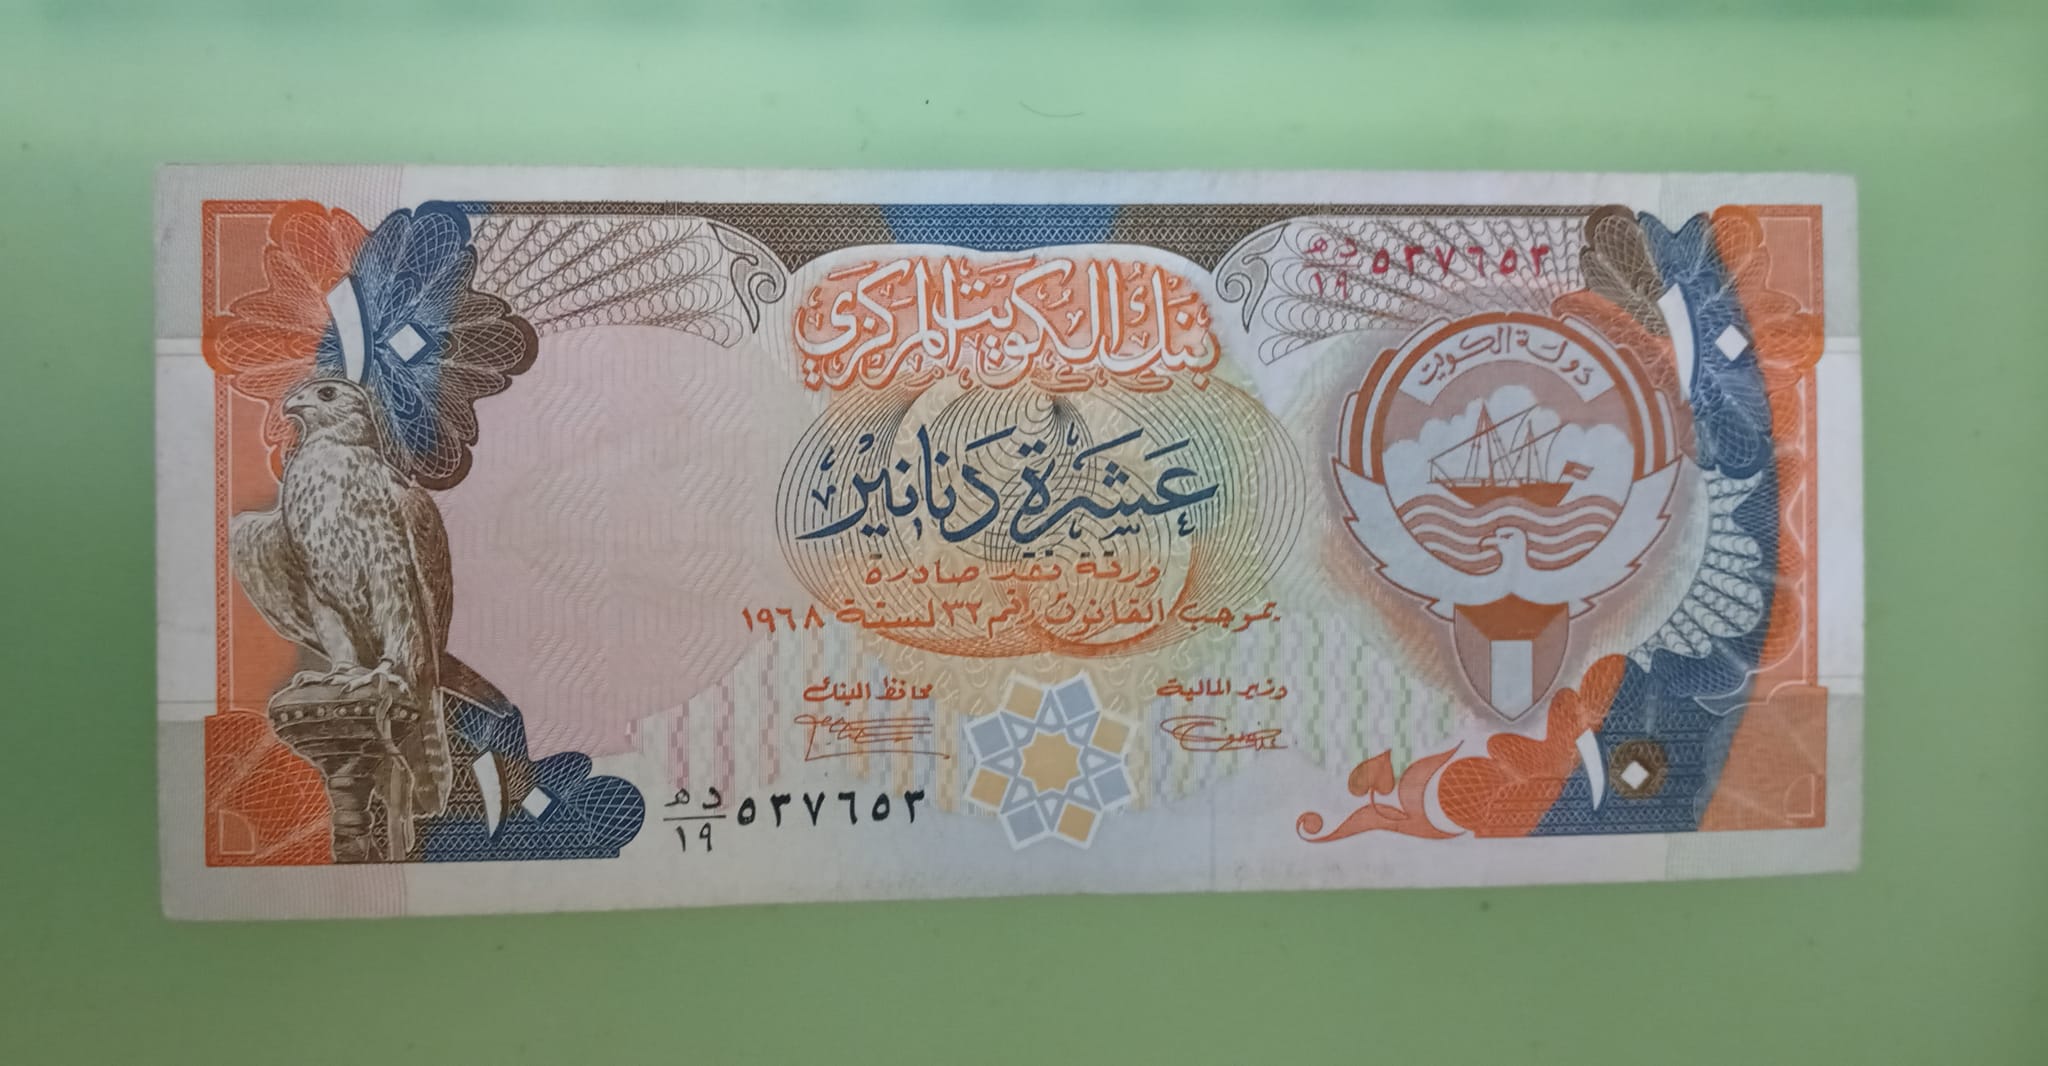 الكويت 20 دينار التحرير الحمراء حاله ممتازه جدا شحيح وقيم | بيع العملات  القديمة